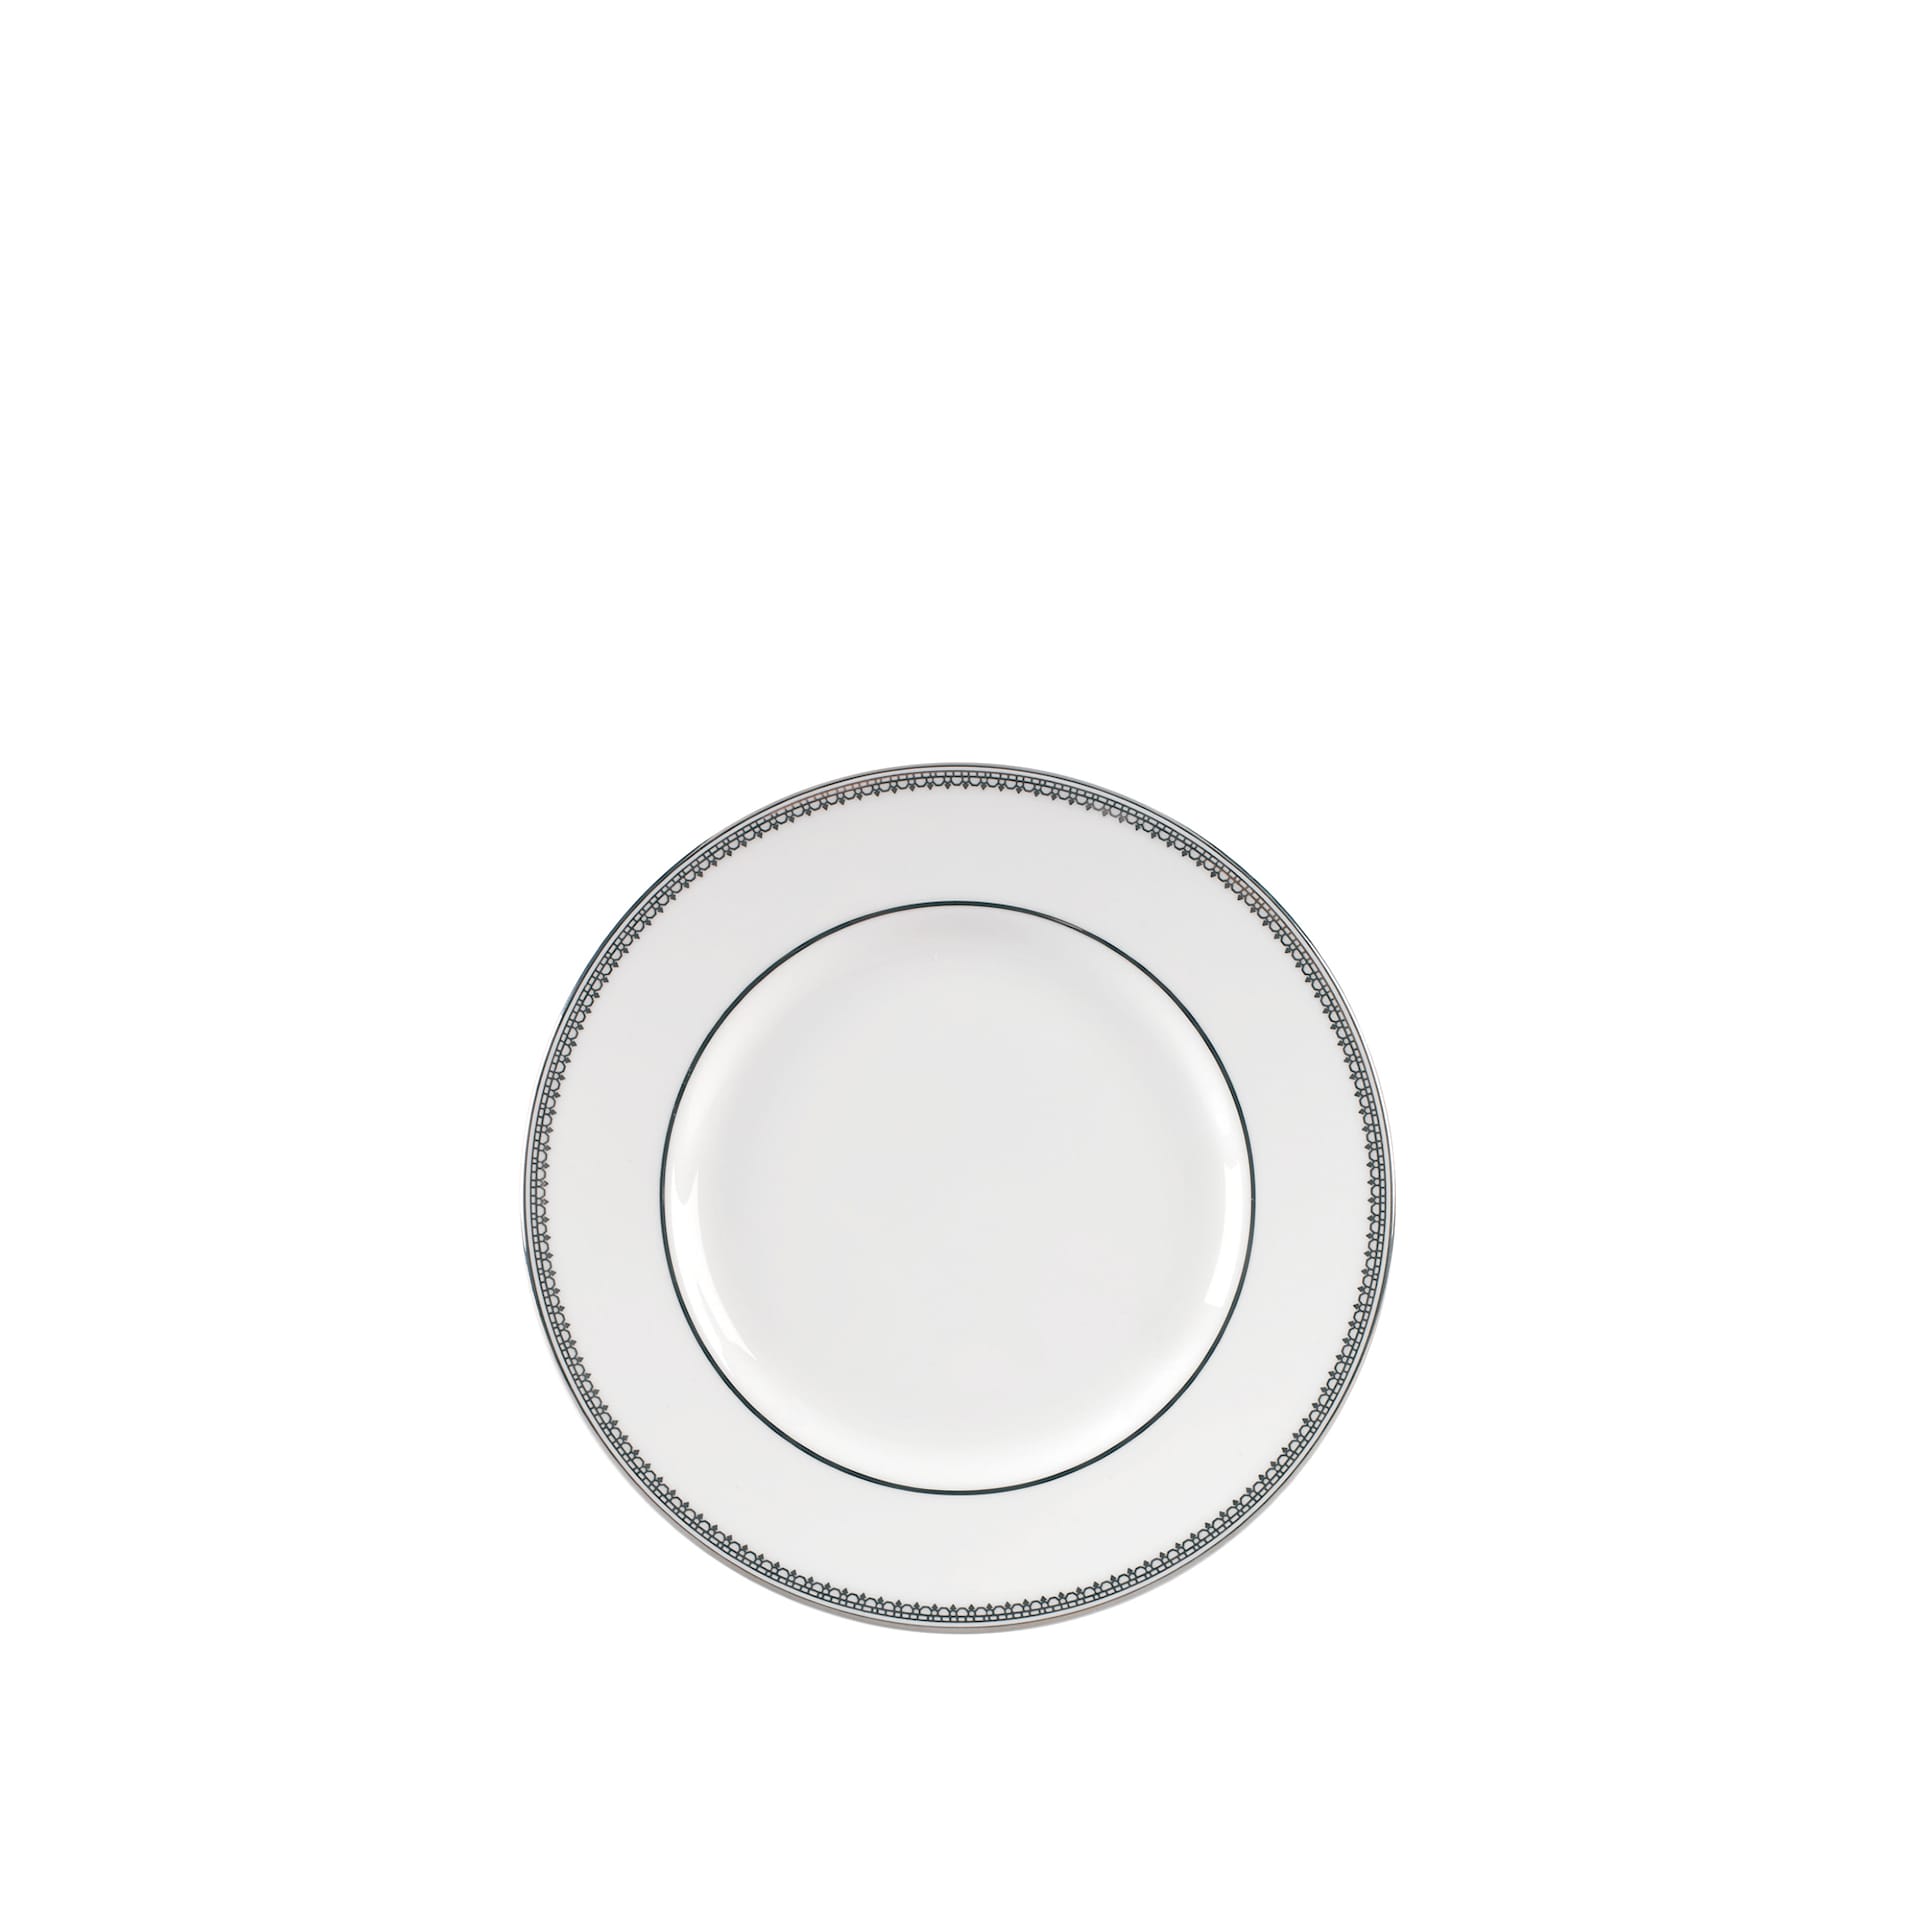 Vera Wang Lace Platinum Small Plate - Wedgwood - NO GA